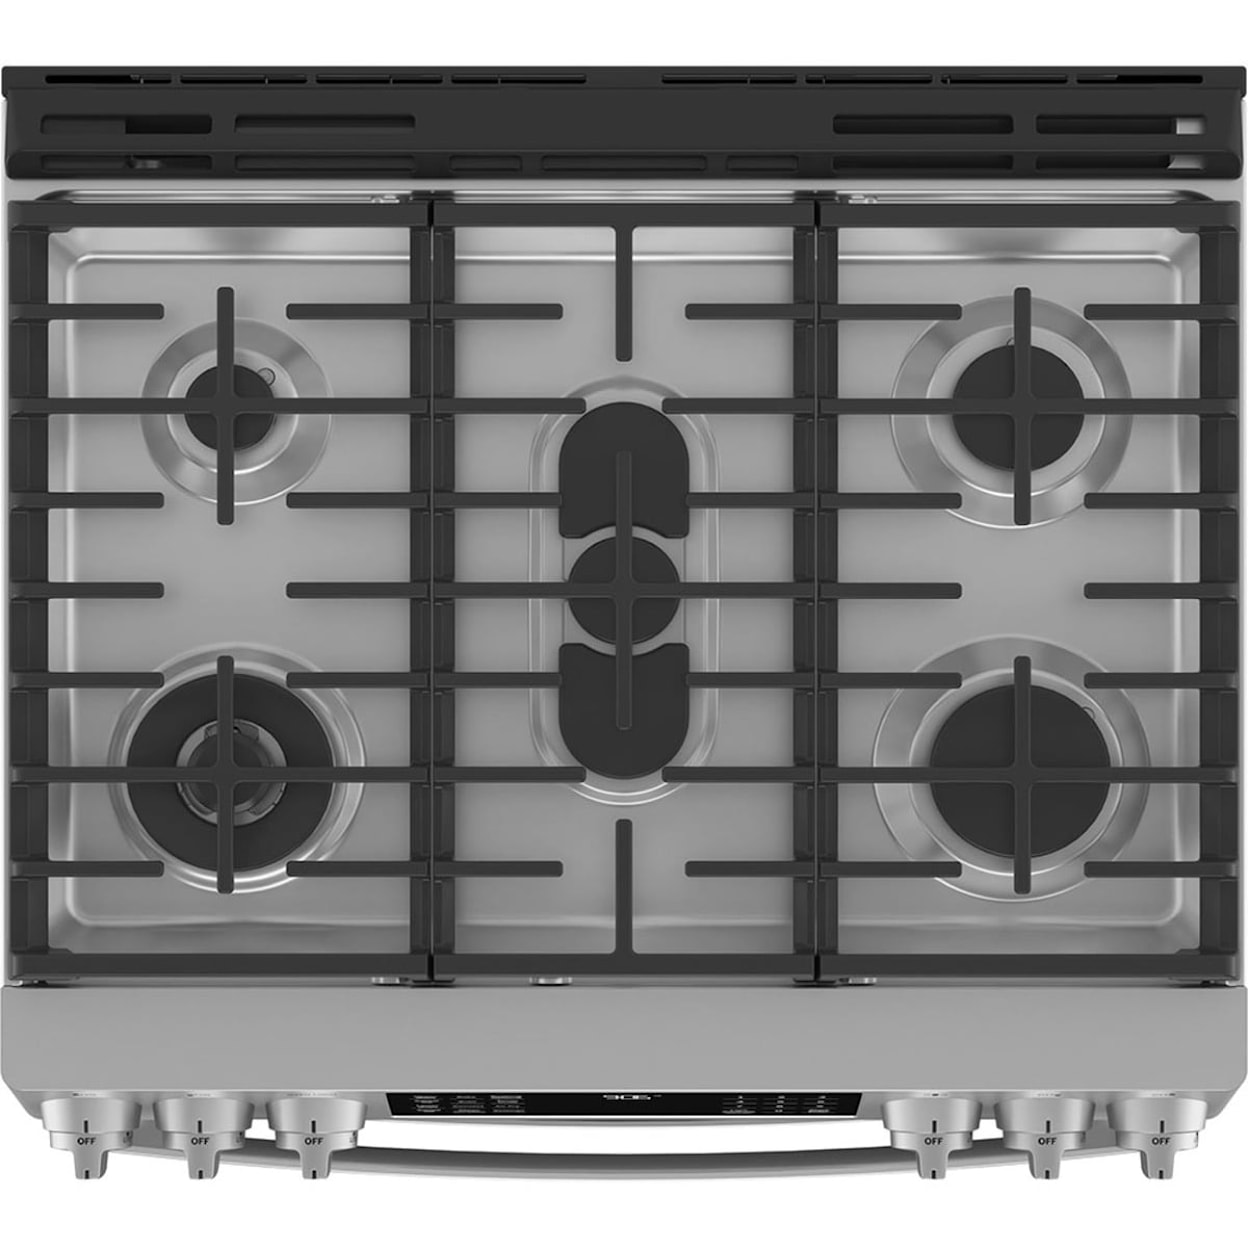 GE Appliances Ranges Double Oven Gas Range